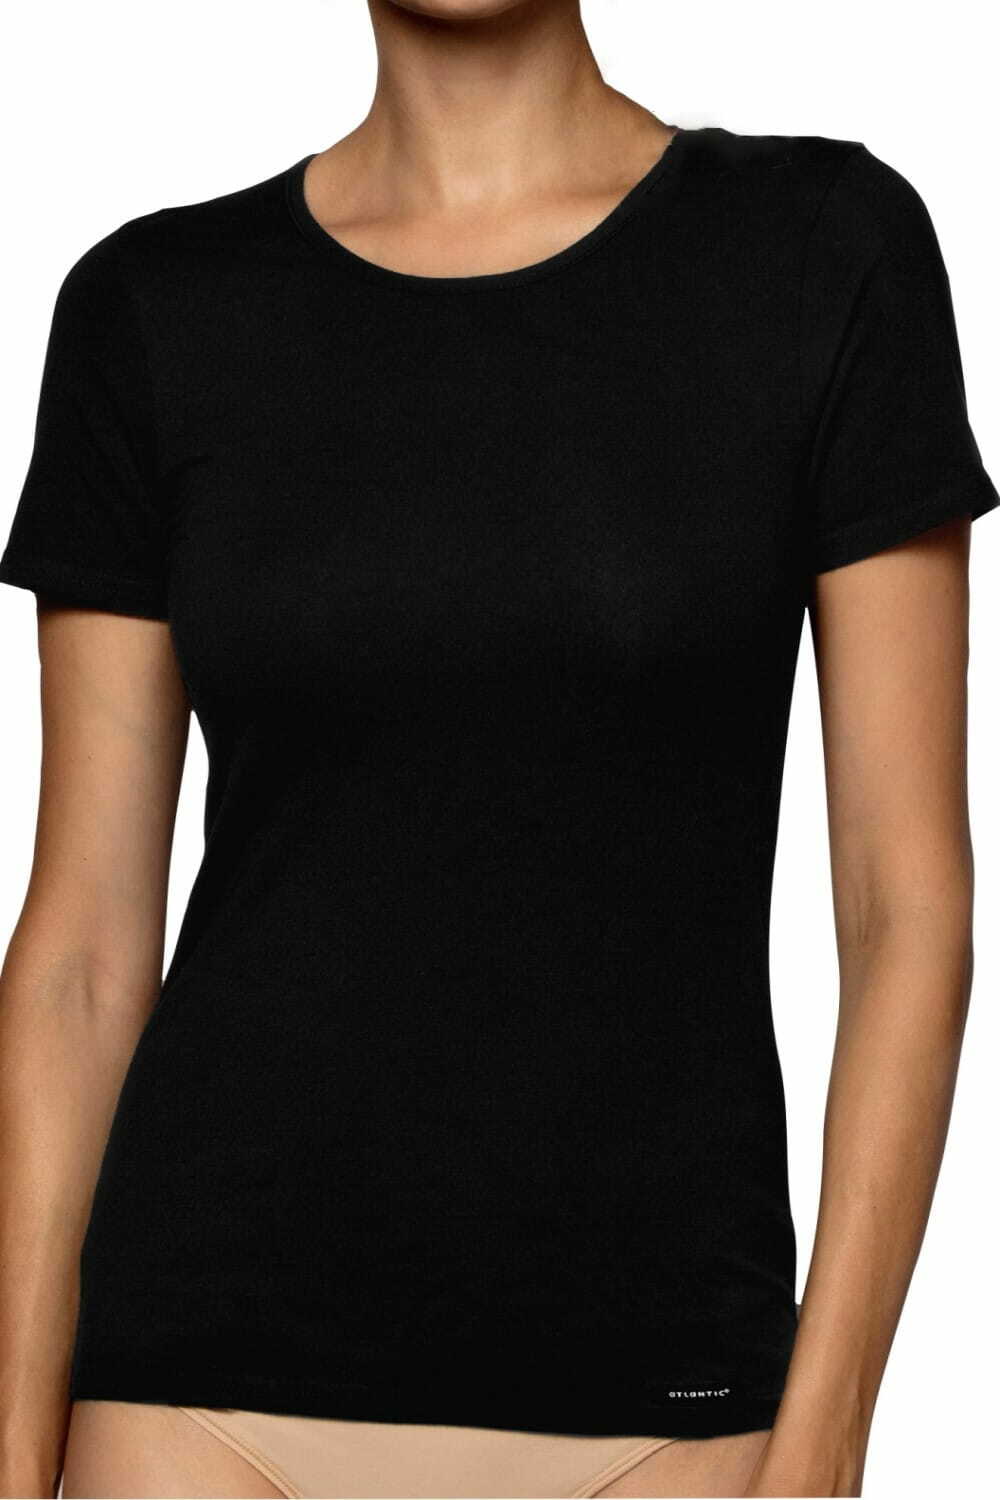 Koszulka damska Atlantic BLV-199 czarna